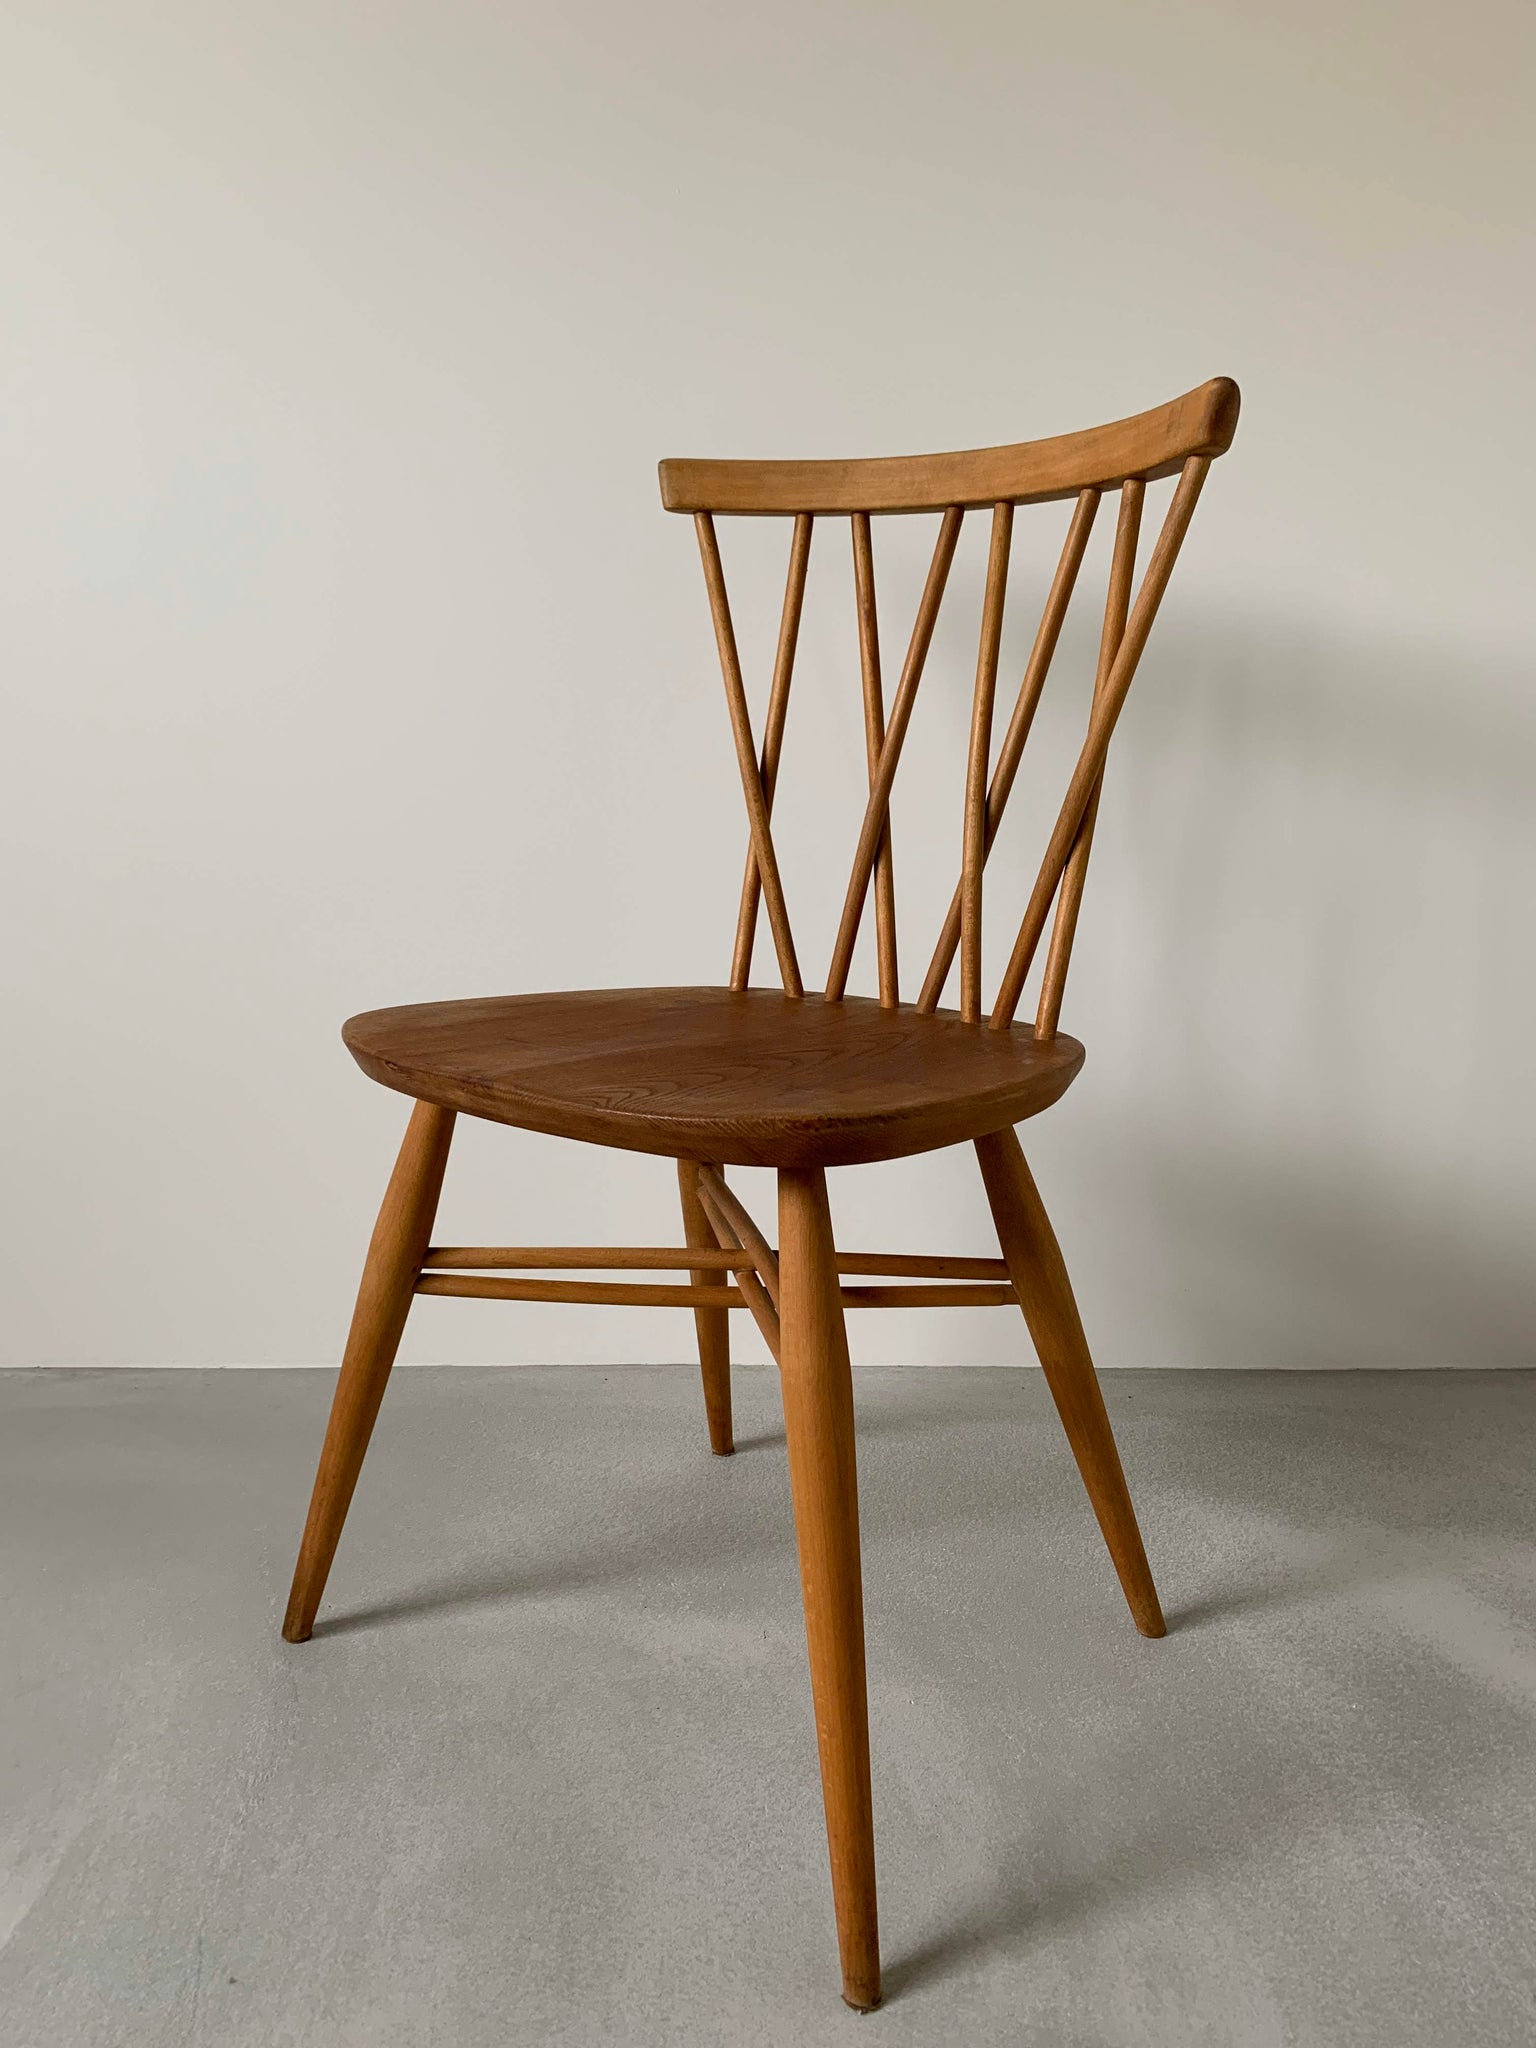 アーコール ウィンザー クロスバック チェア / ercol windsor latticed chair '376' #0002